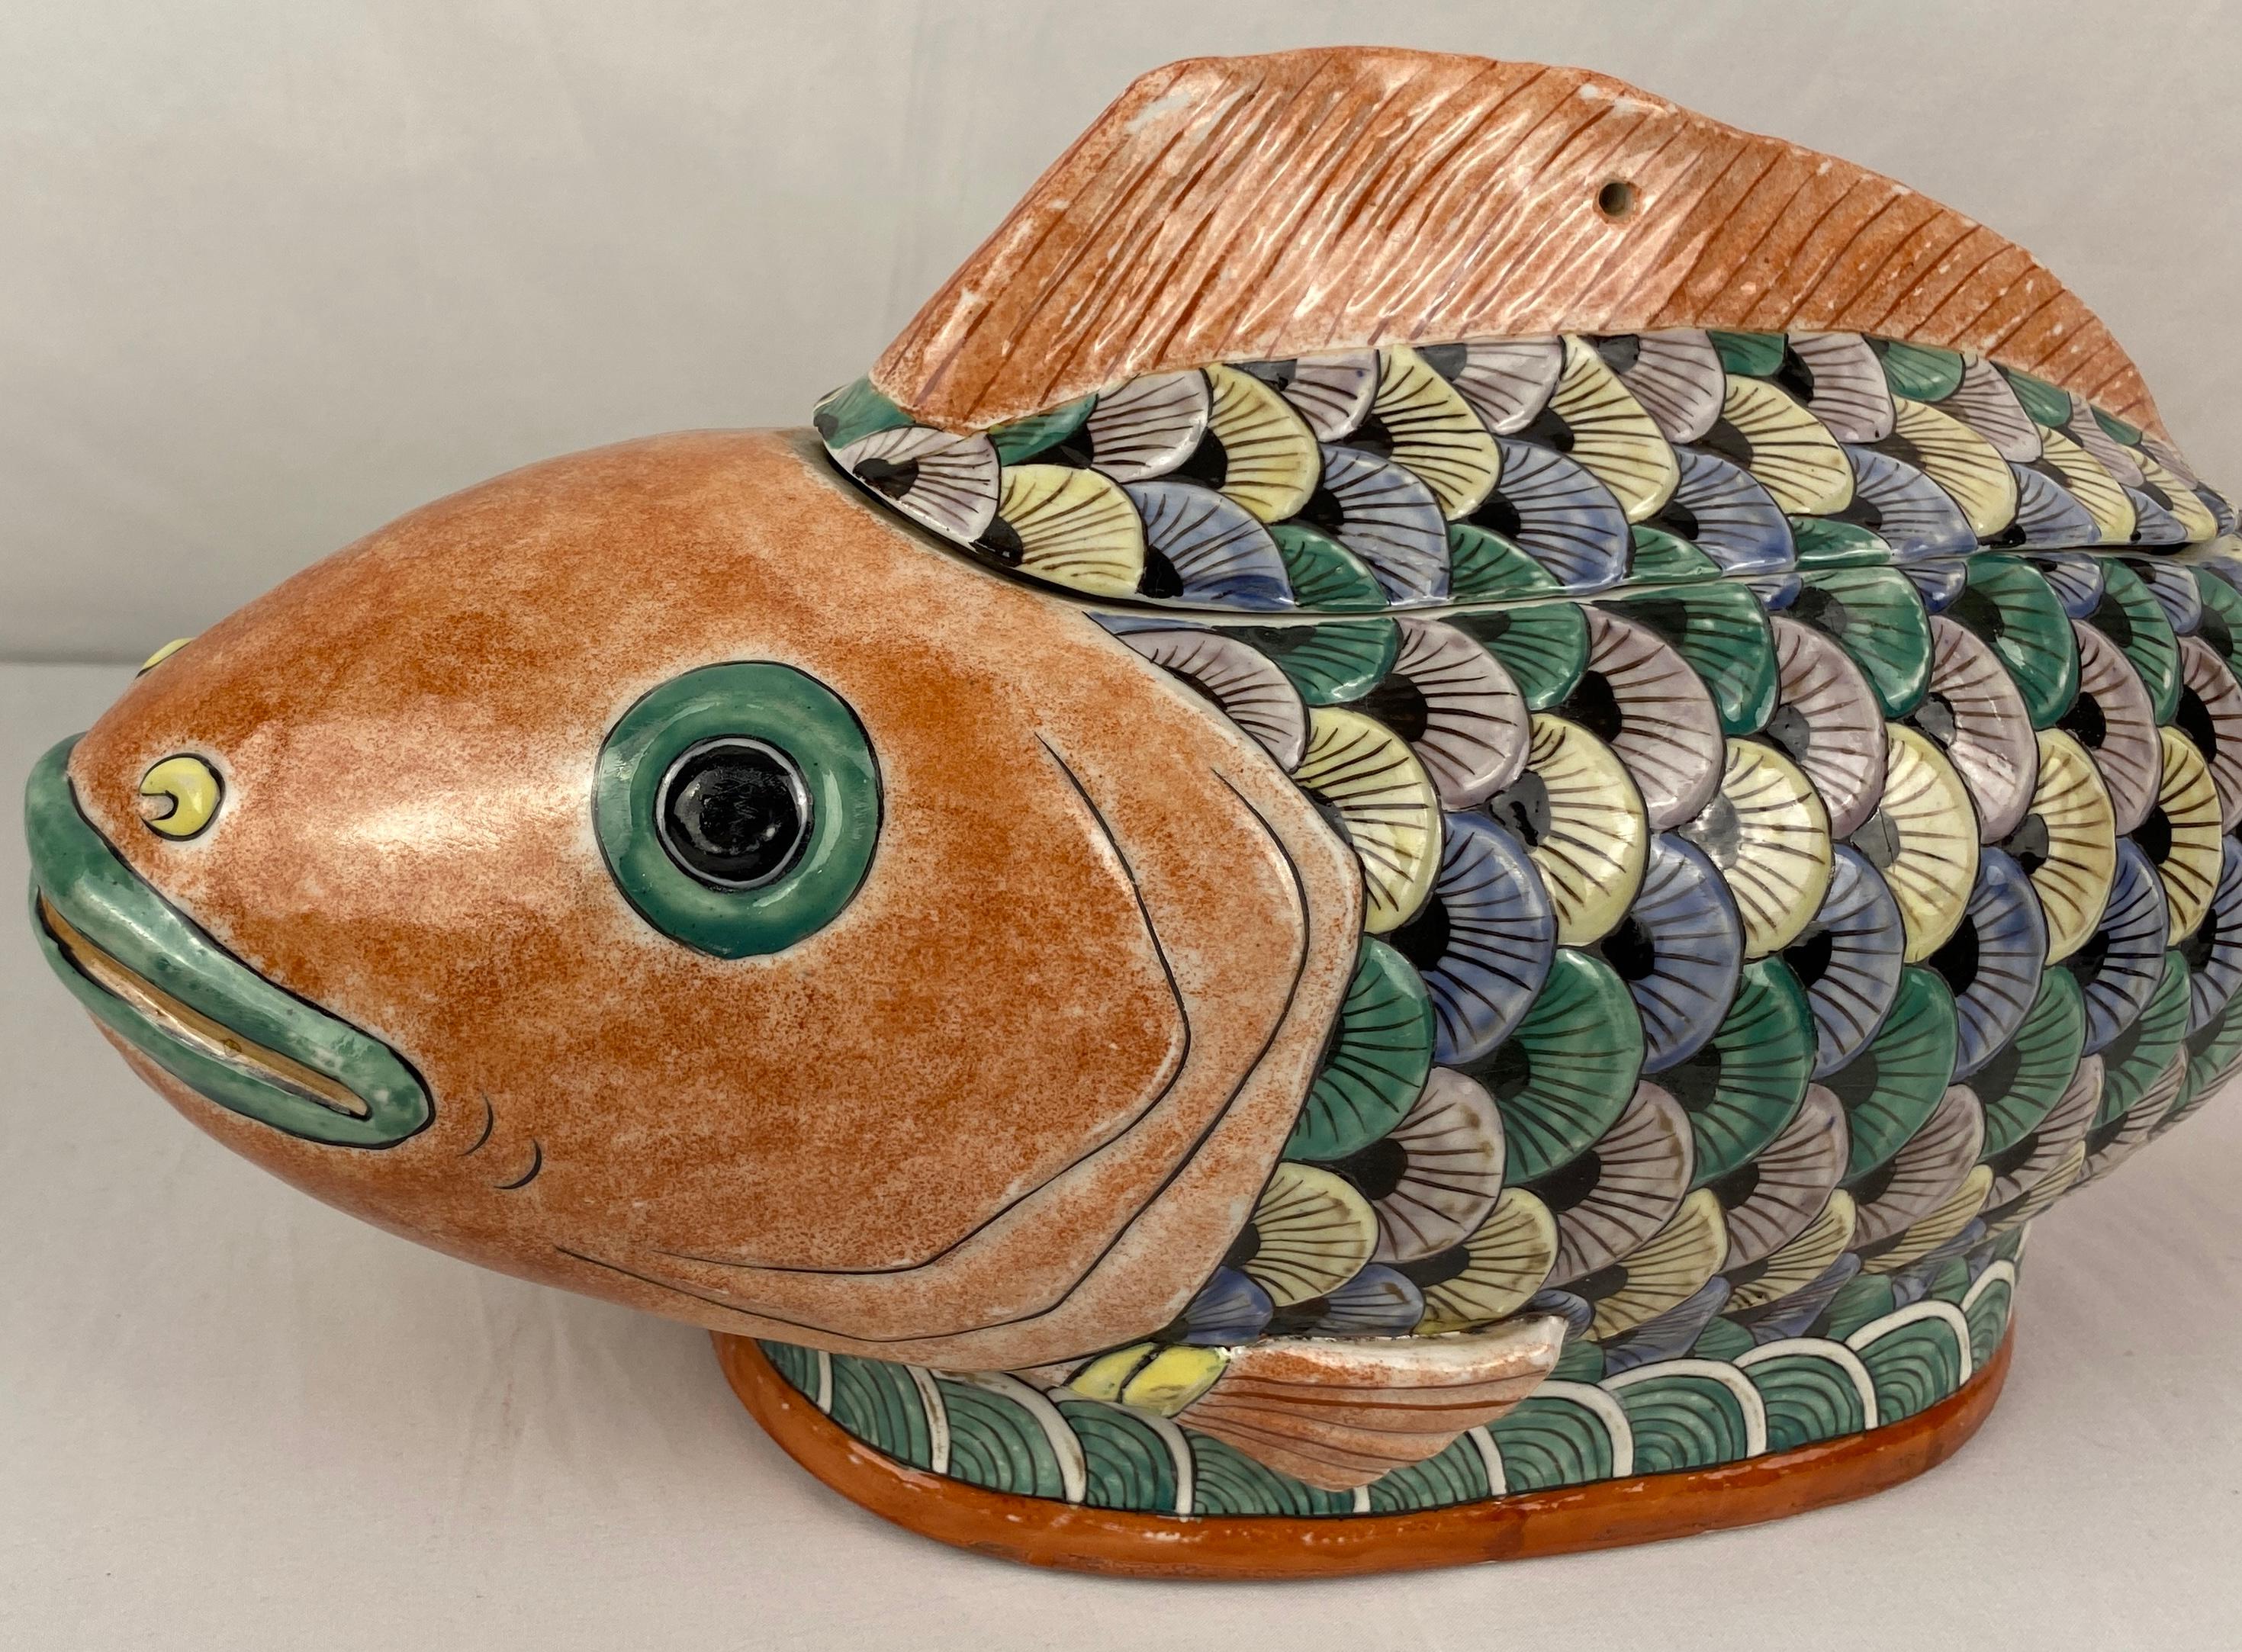 Keramikfische aus der Mitte des Jahrhunderts, CIRCA 1960er Jahre, von unseren jüngsten Erwerbungen, lokalen Reisen - ein schöner Fang.

Eine handgefertigte Fischskulptur in schöner Größe aus Keramik, die Wohlstand, Ausdauer und Glück symbolisiert.